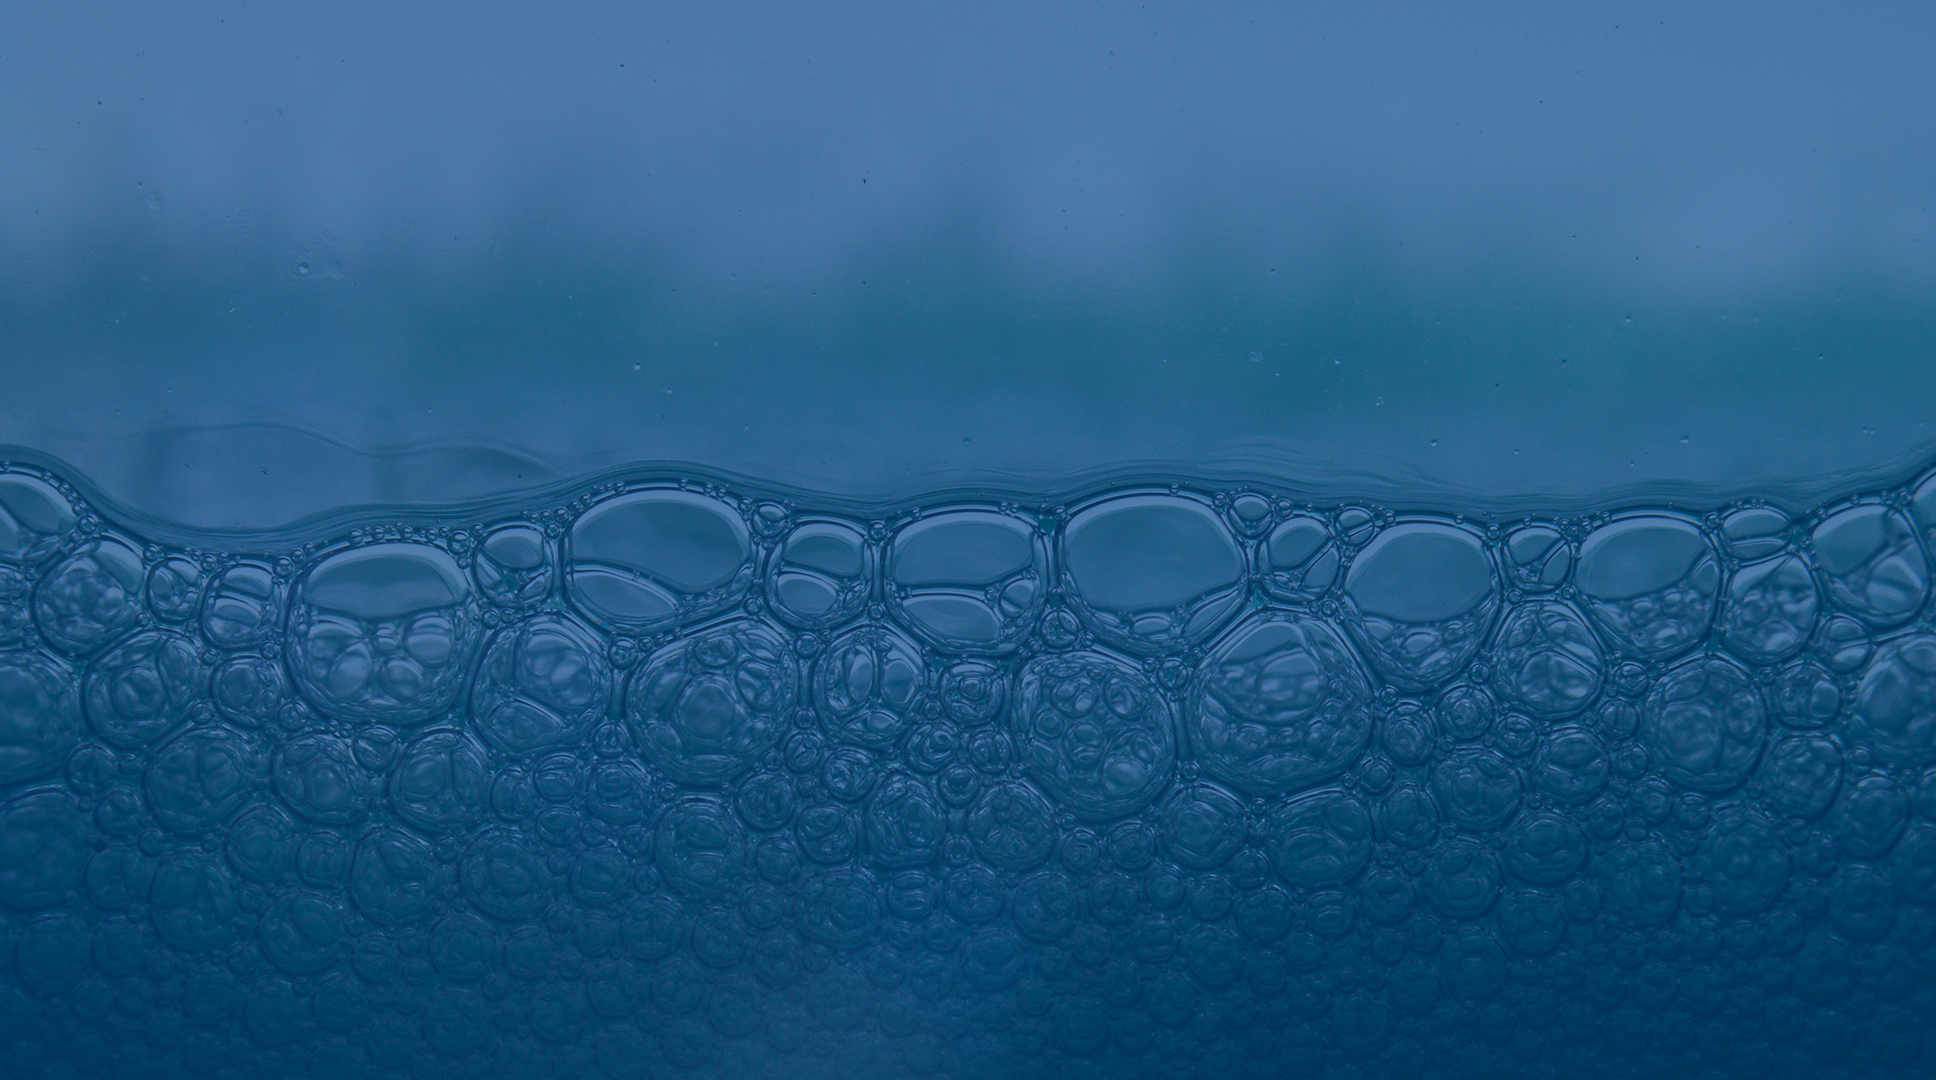 Image of soap bubbles